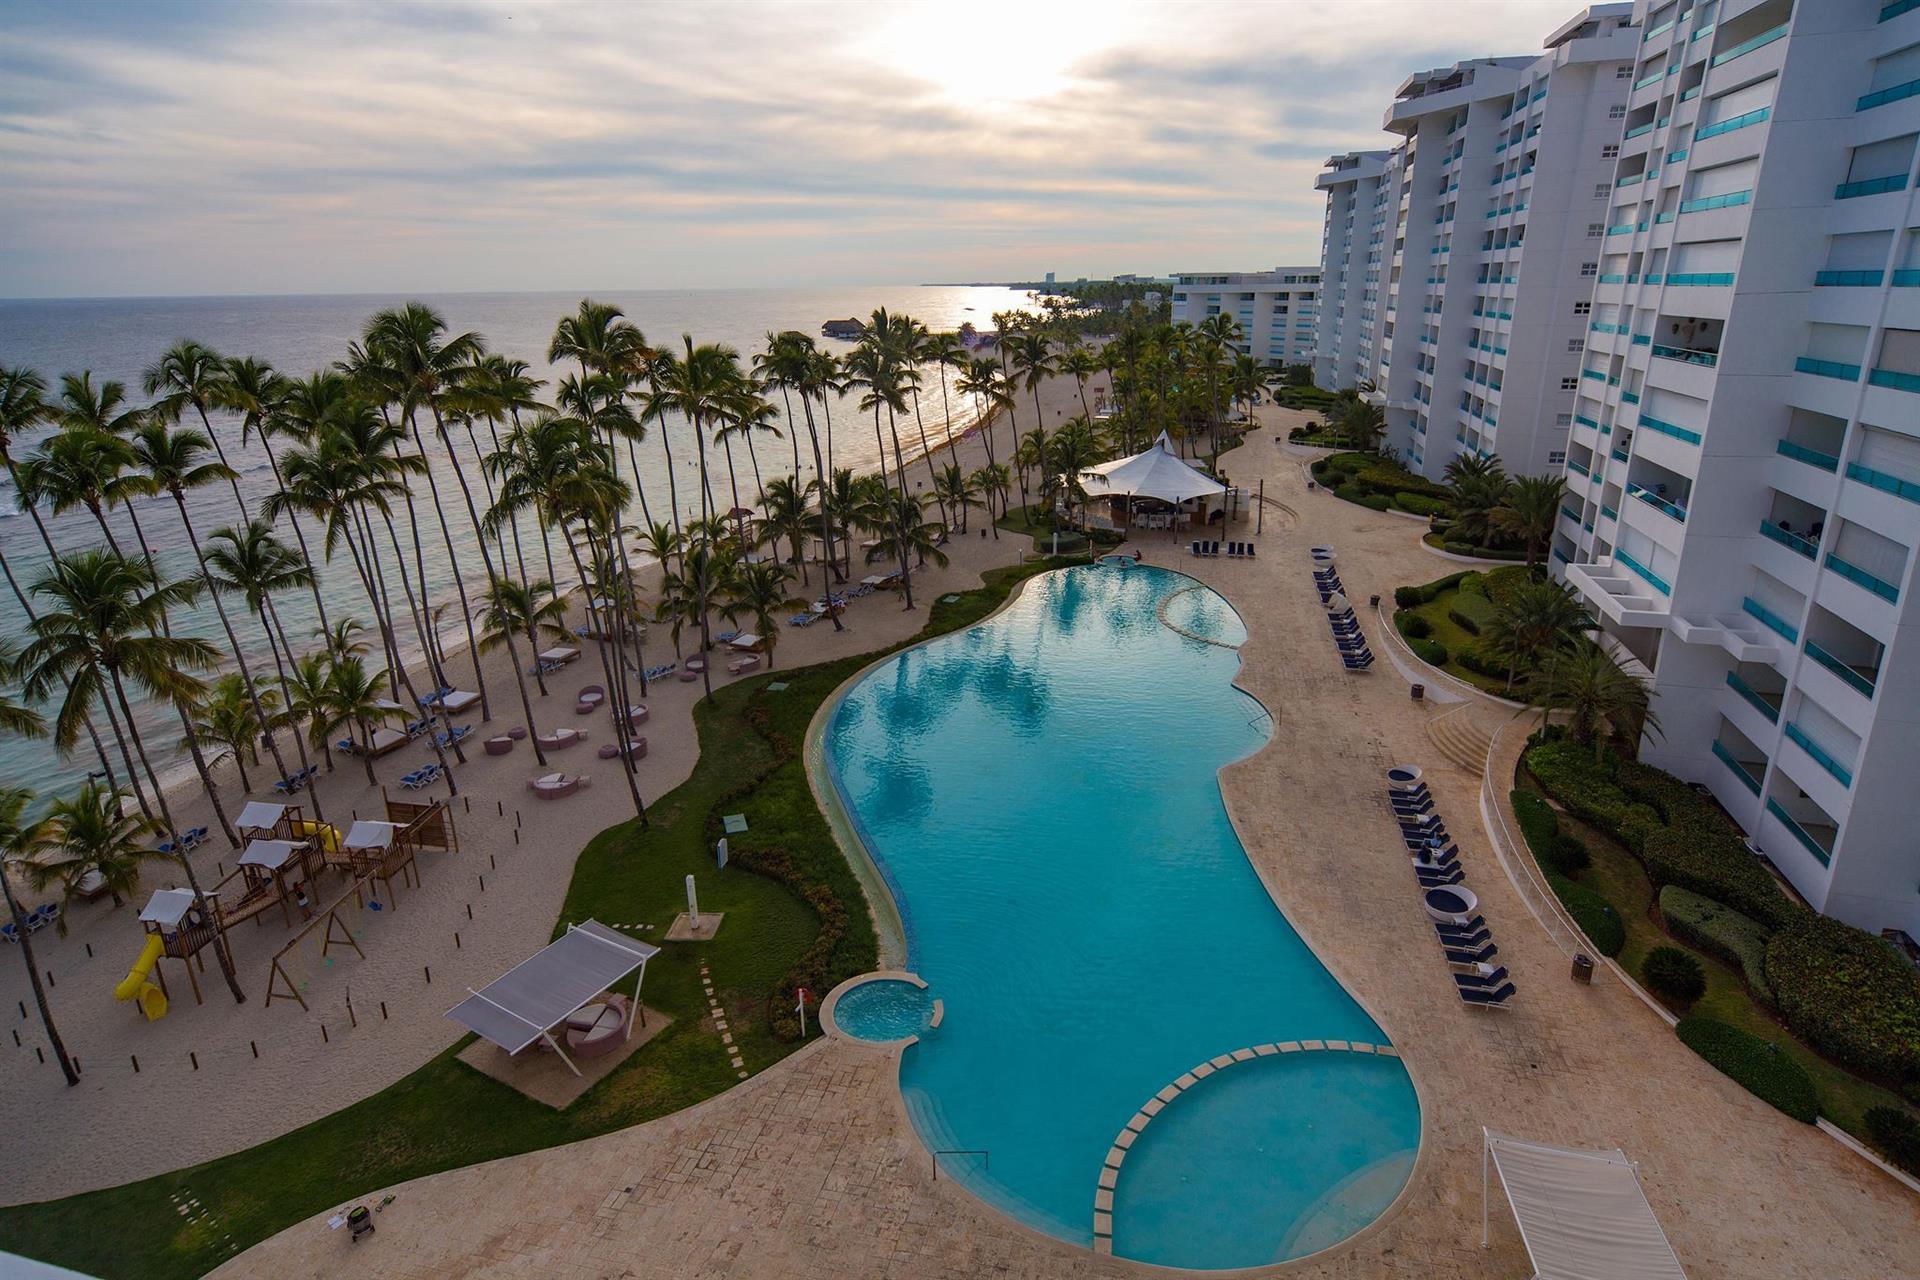 Costa caribe 4 венесуэла. Gran Caribe Neptuno Triton Гавана. Costa Caribe Beach Hotel Resort 4 Венесуэла. Gran Caribe Neptuno & Triton 3*.